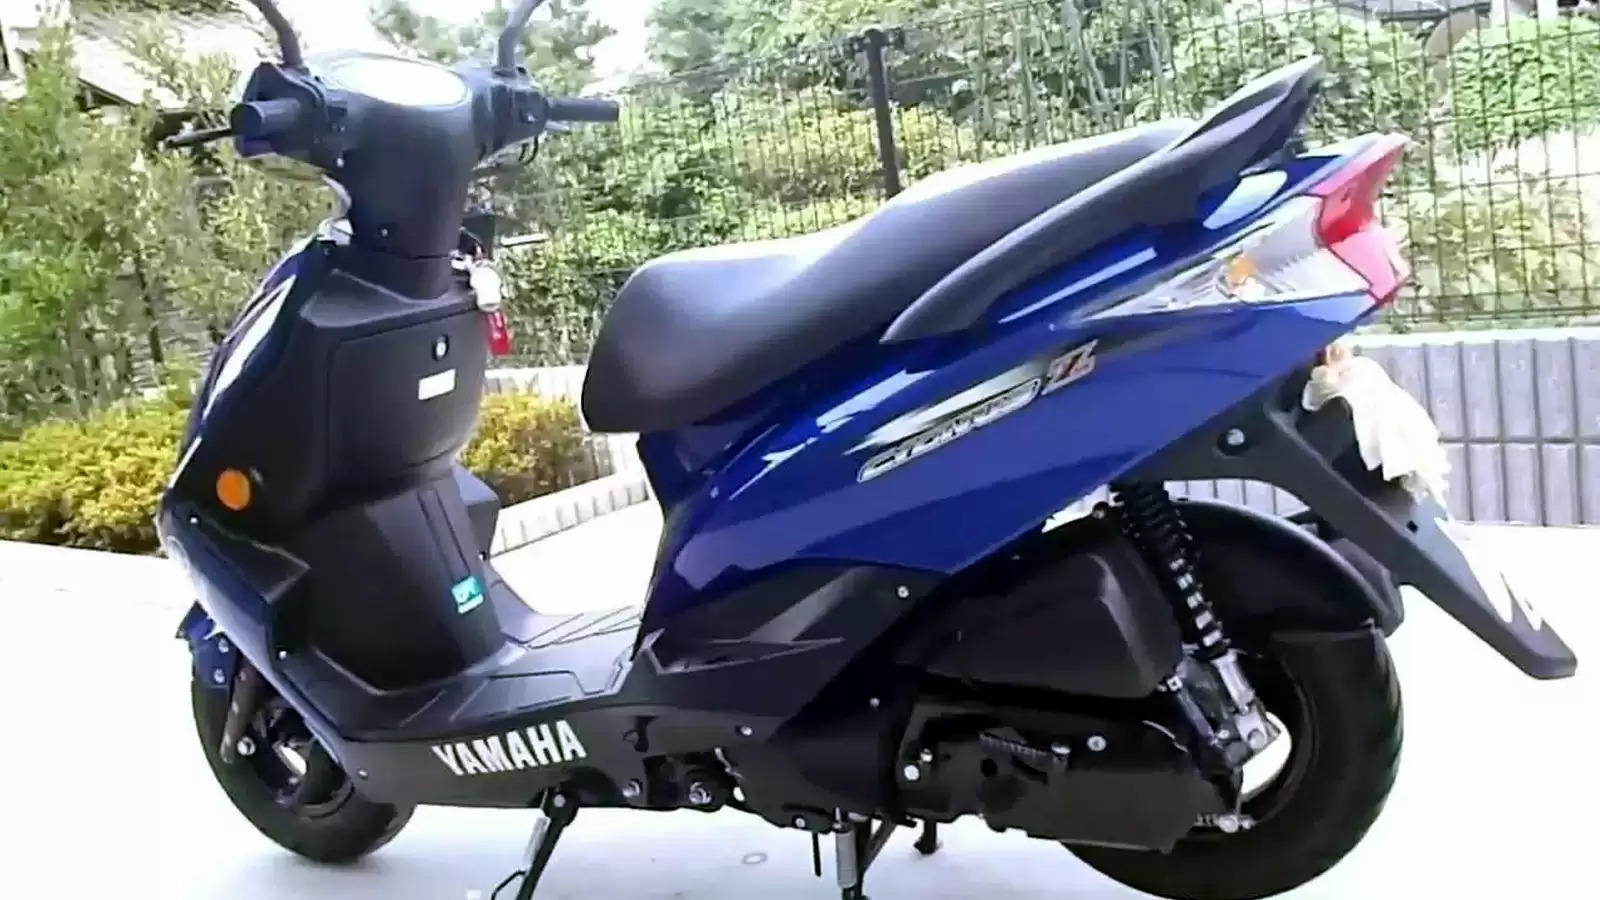 पैसा वसूल फीचर्स और जोरदार लुक में नया Yamaha स्कूटर लॉन्च, जानें कितना दमदार है ‘सिग्नस’